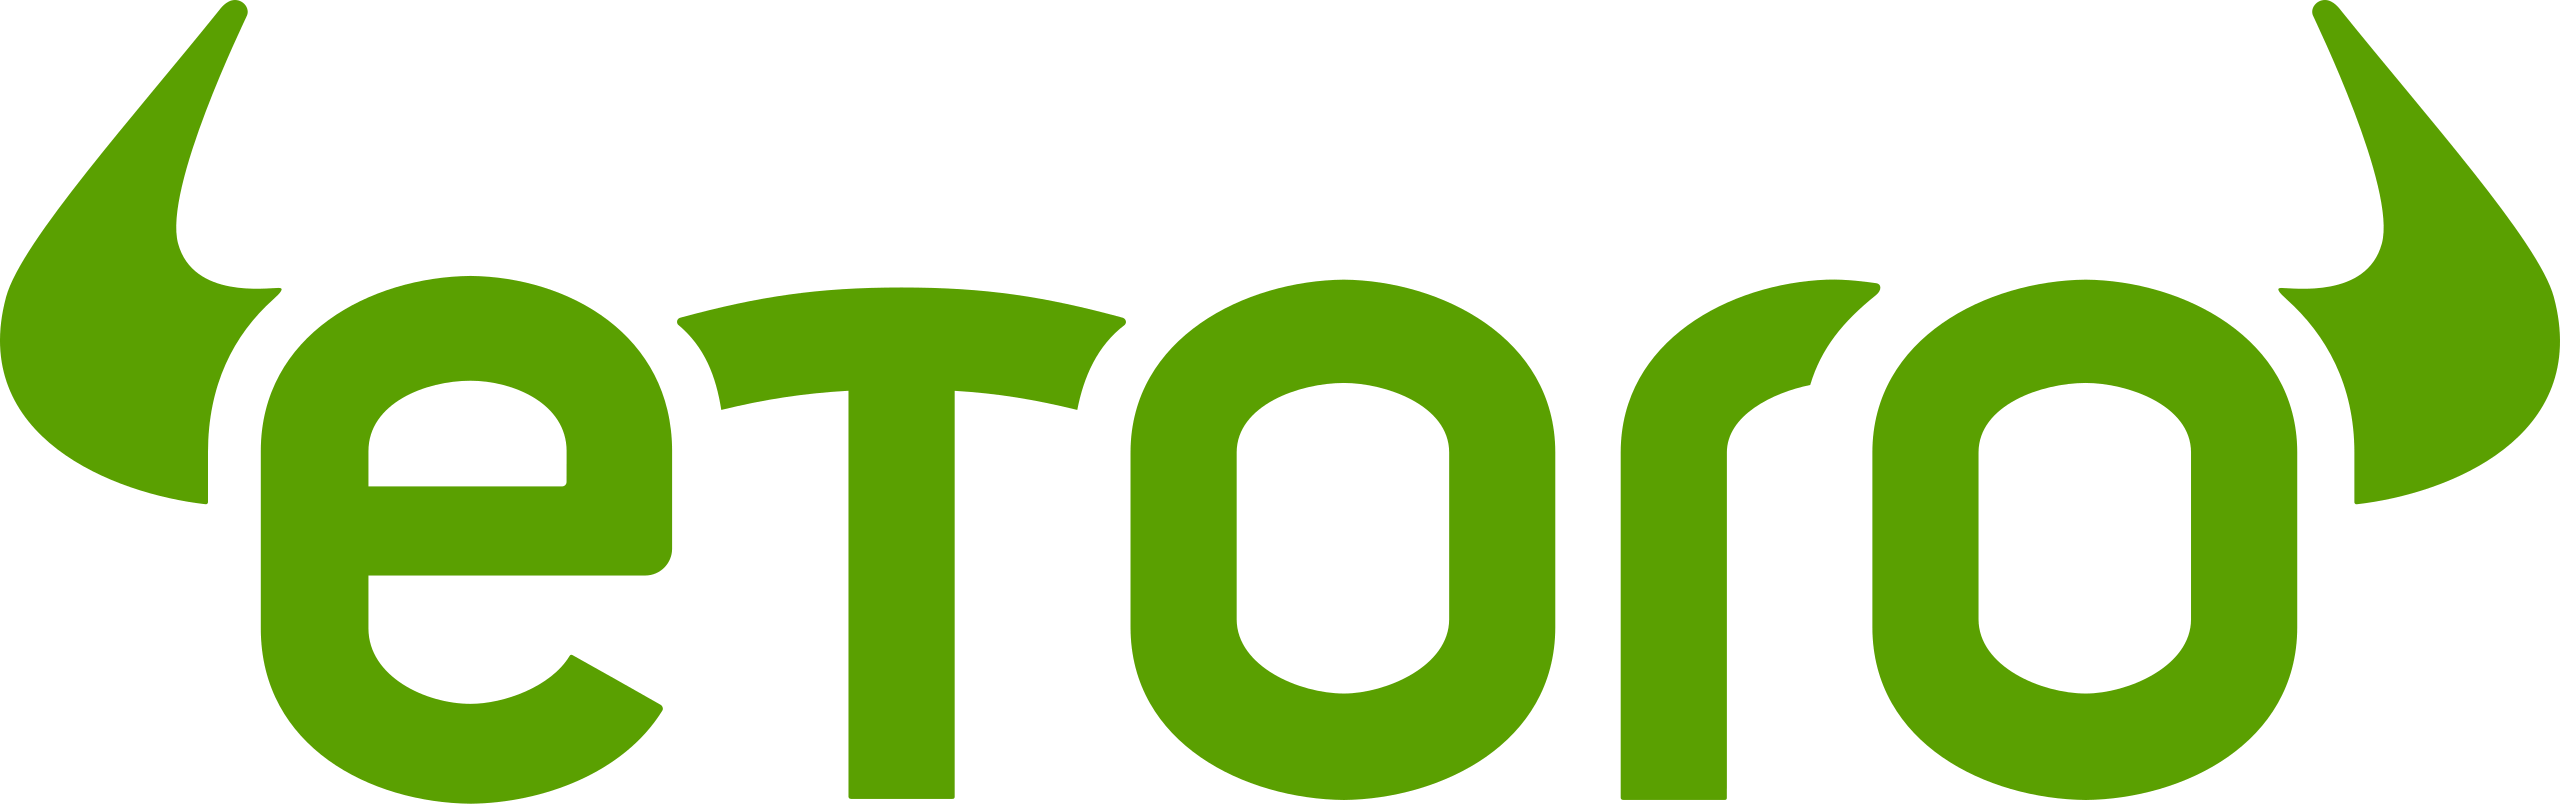 eToro new logo